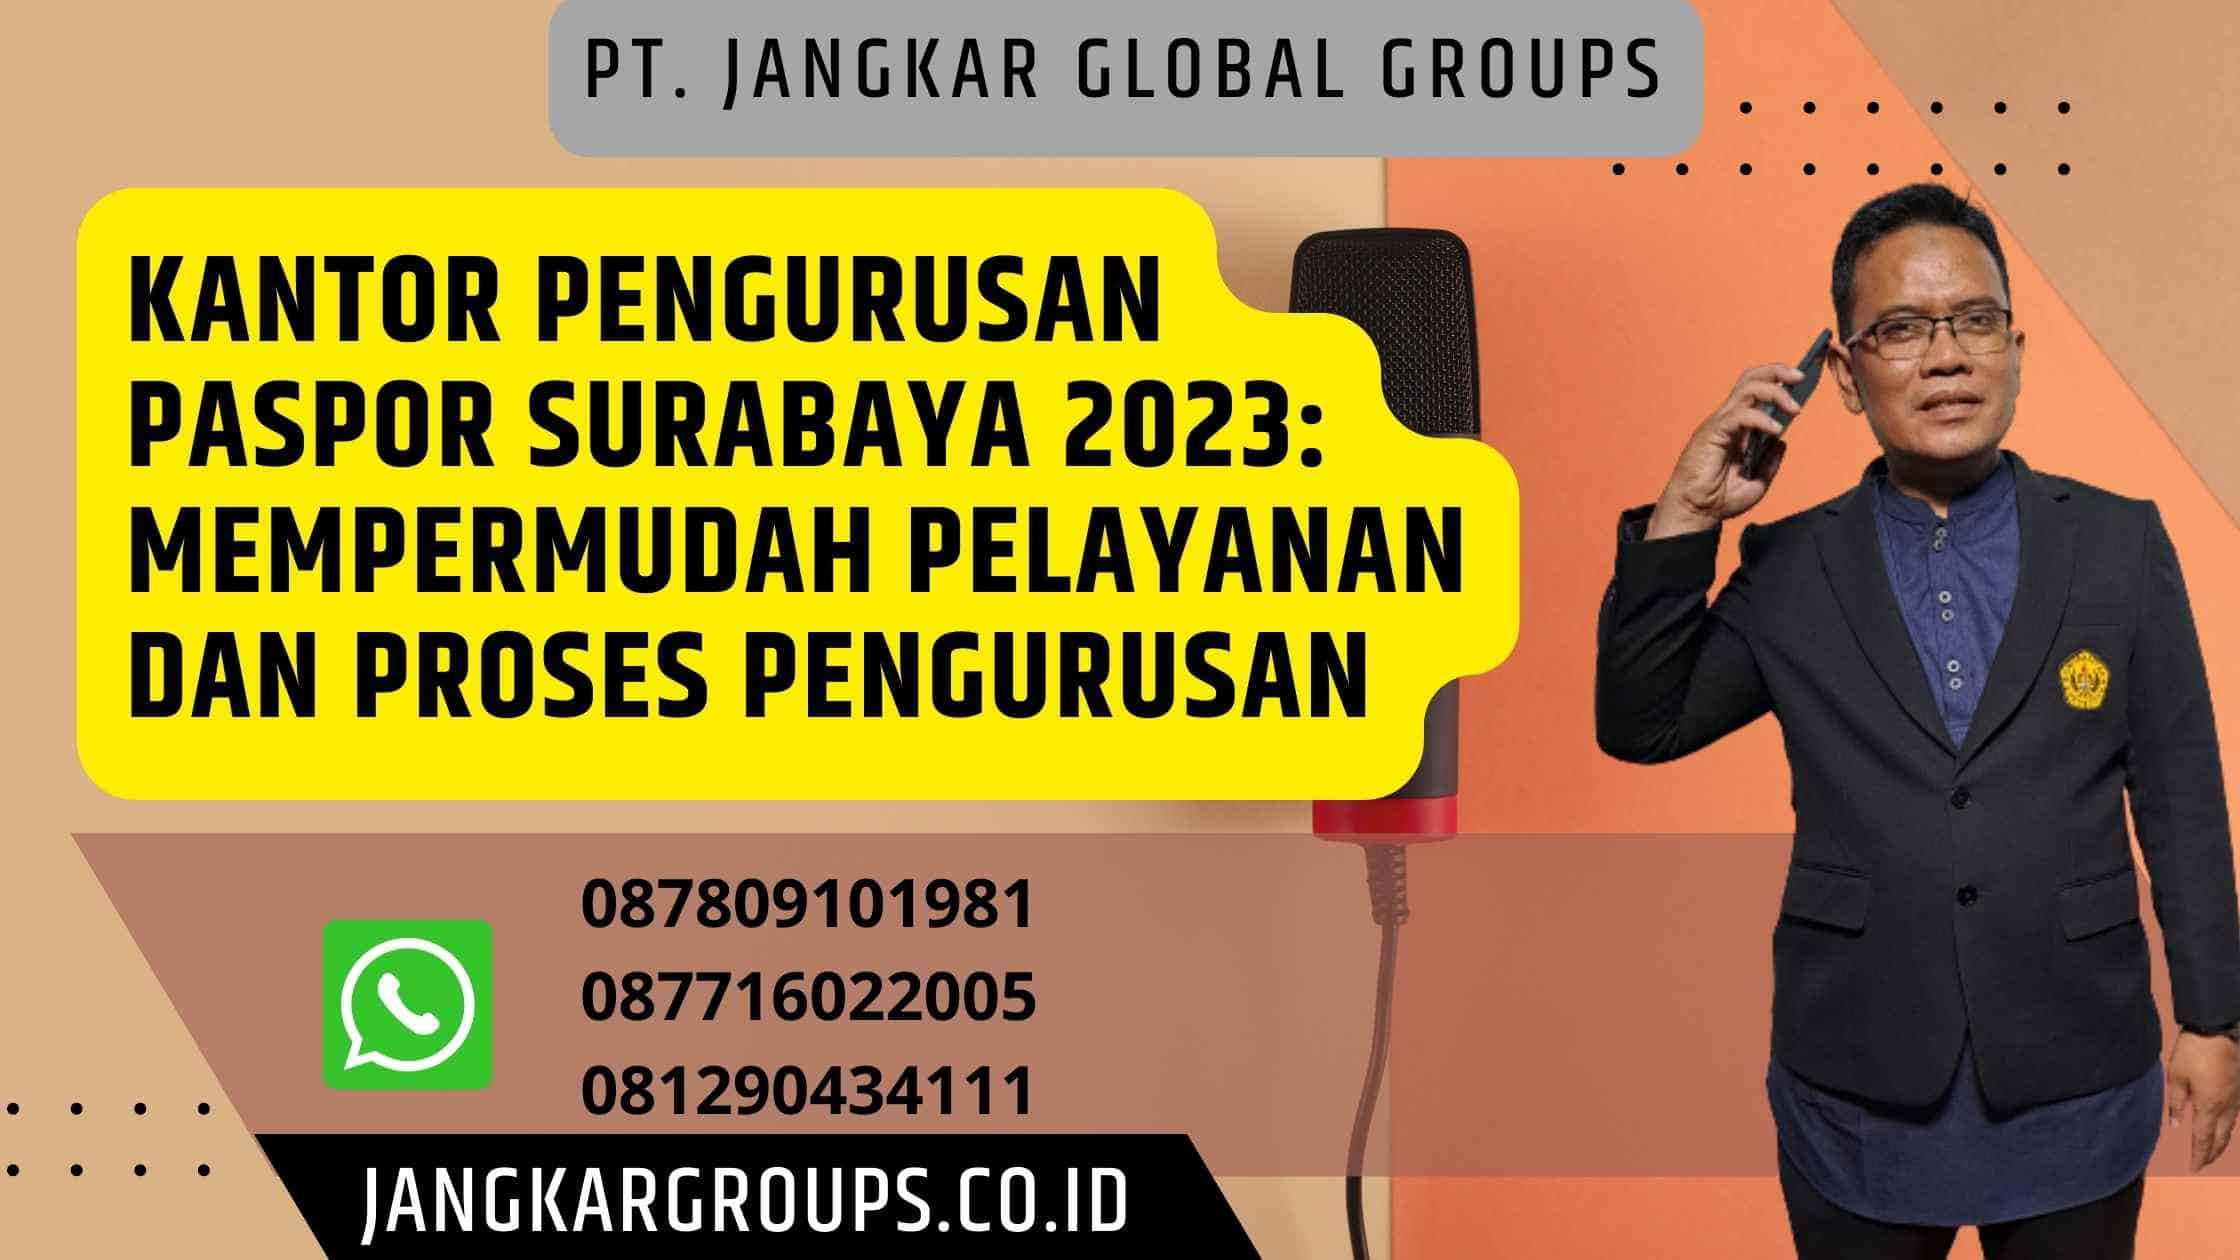 Kantor Pengurusan Paspor Surabaya 2023: Mempermudah Pelayanan dan Proses Pengurusan